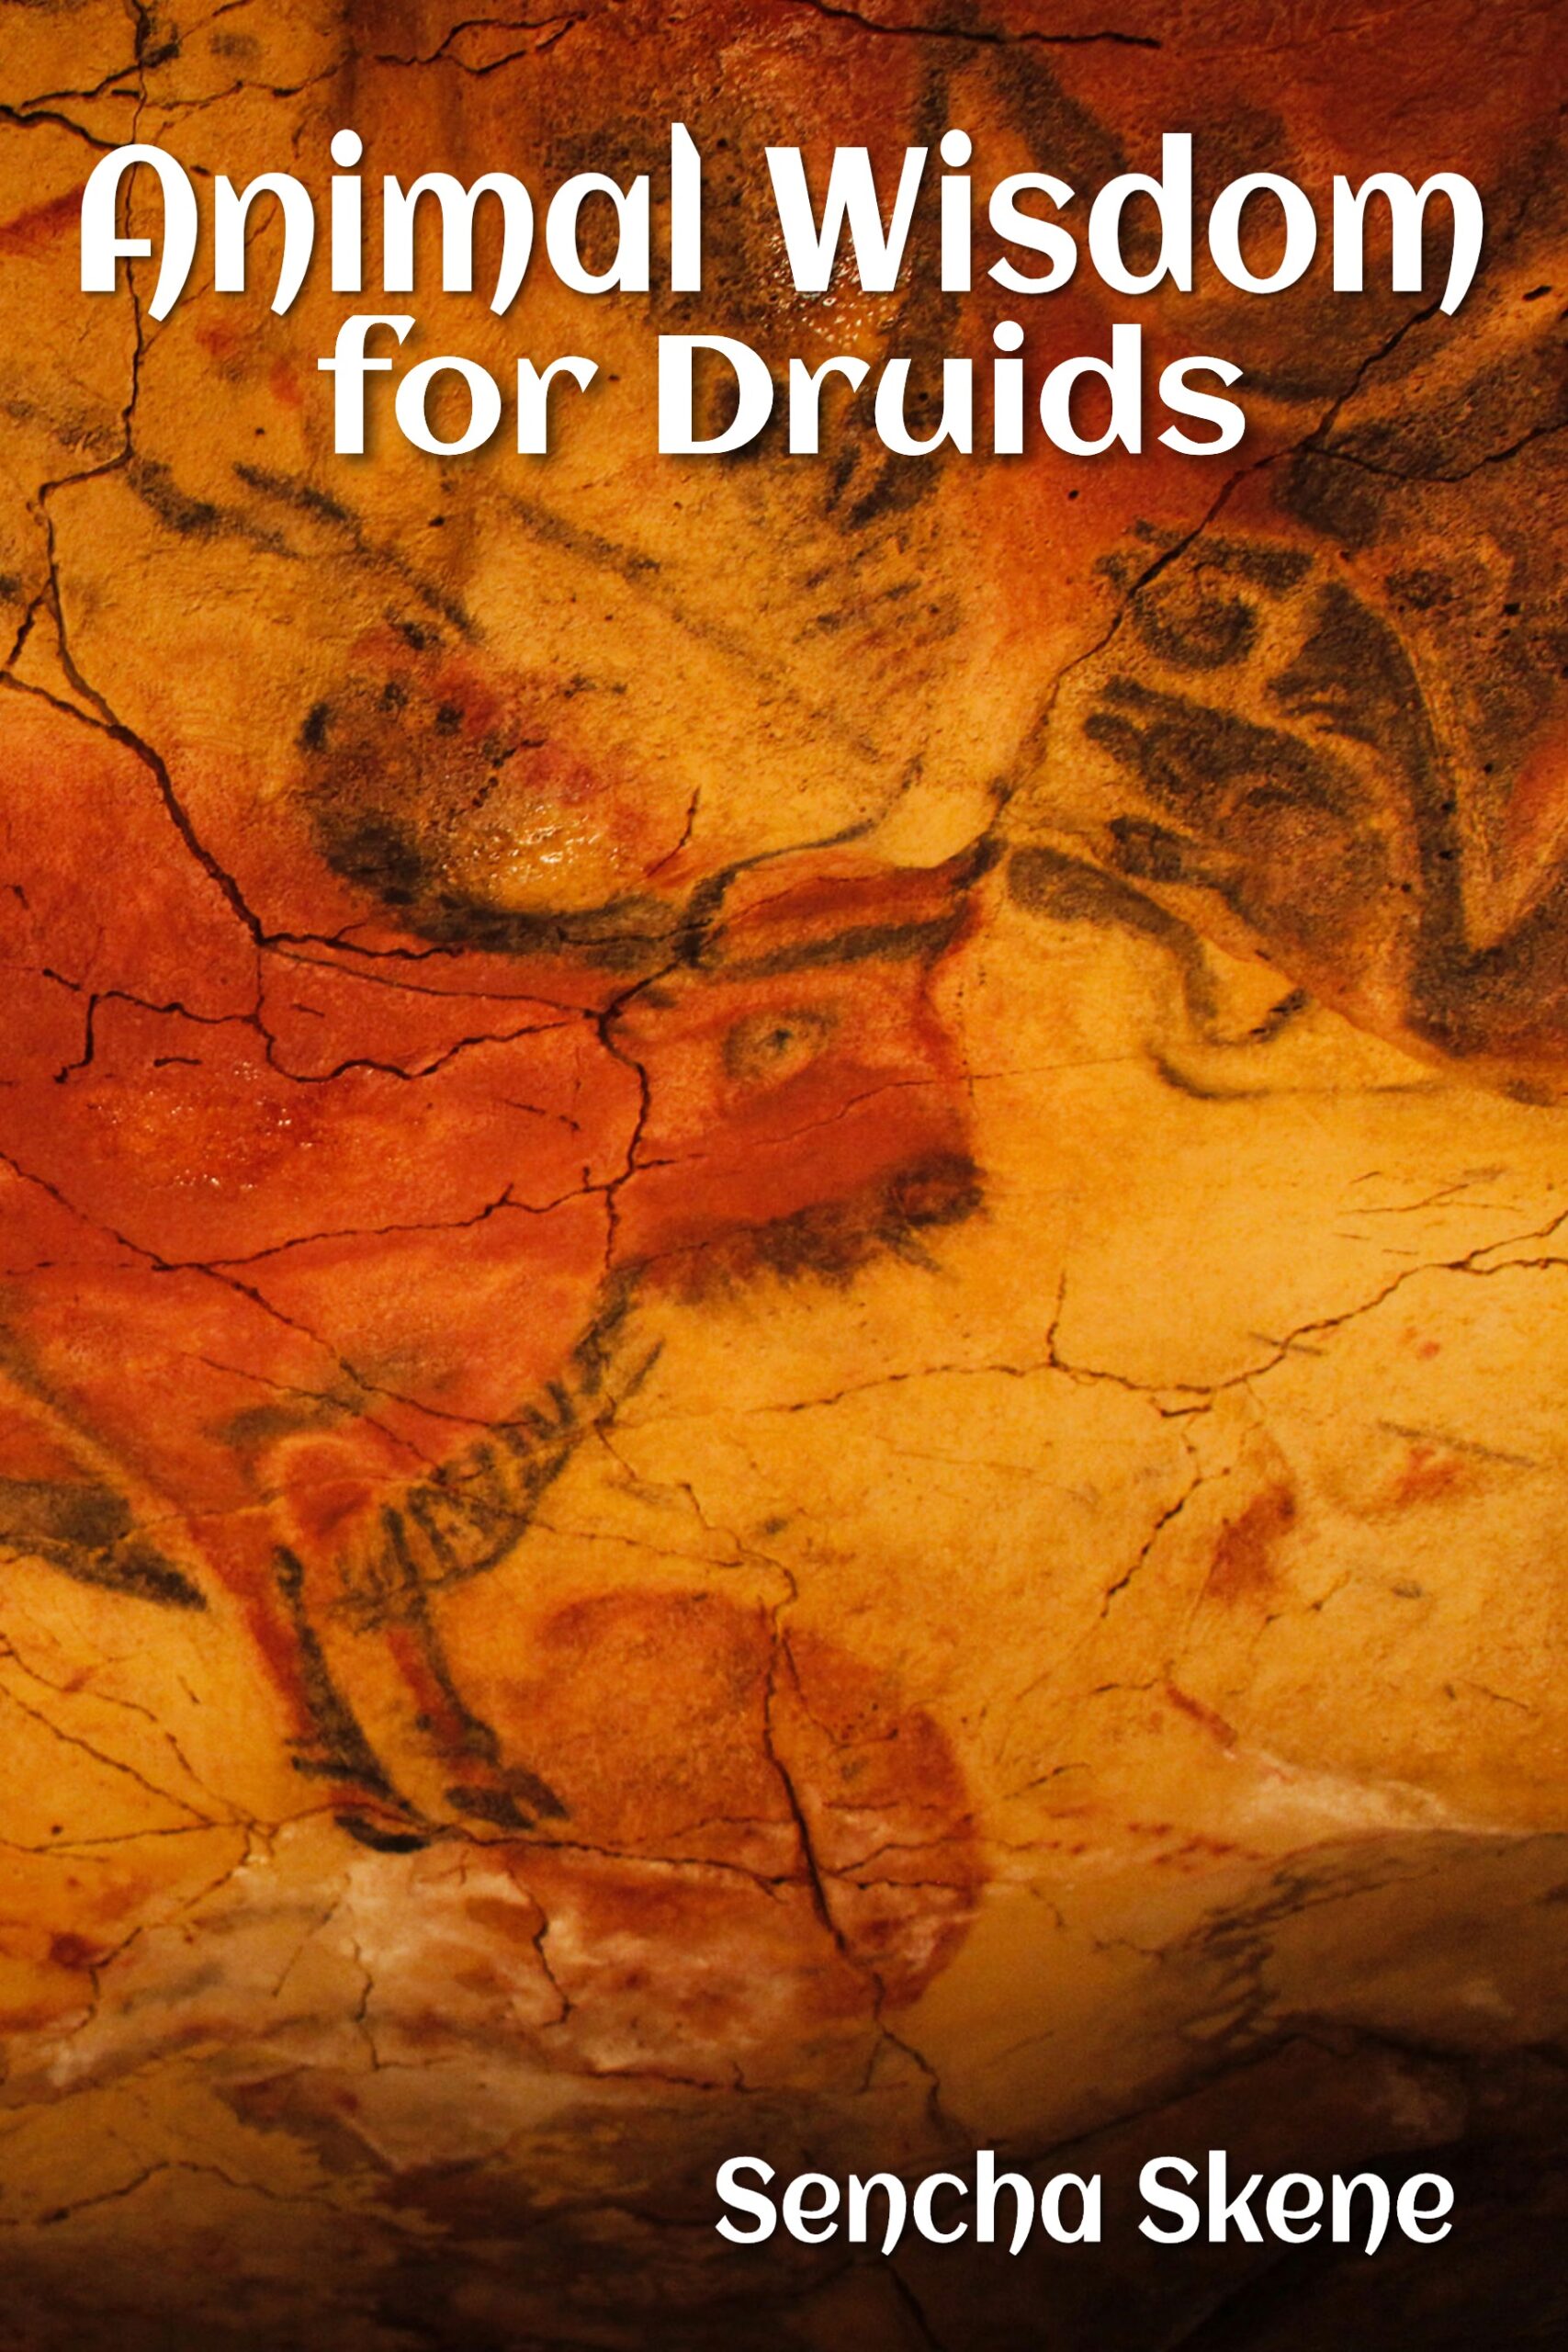 Animal Wisdom for Druids pdf book